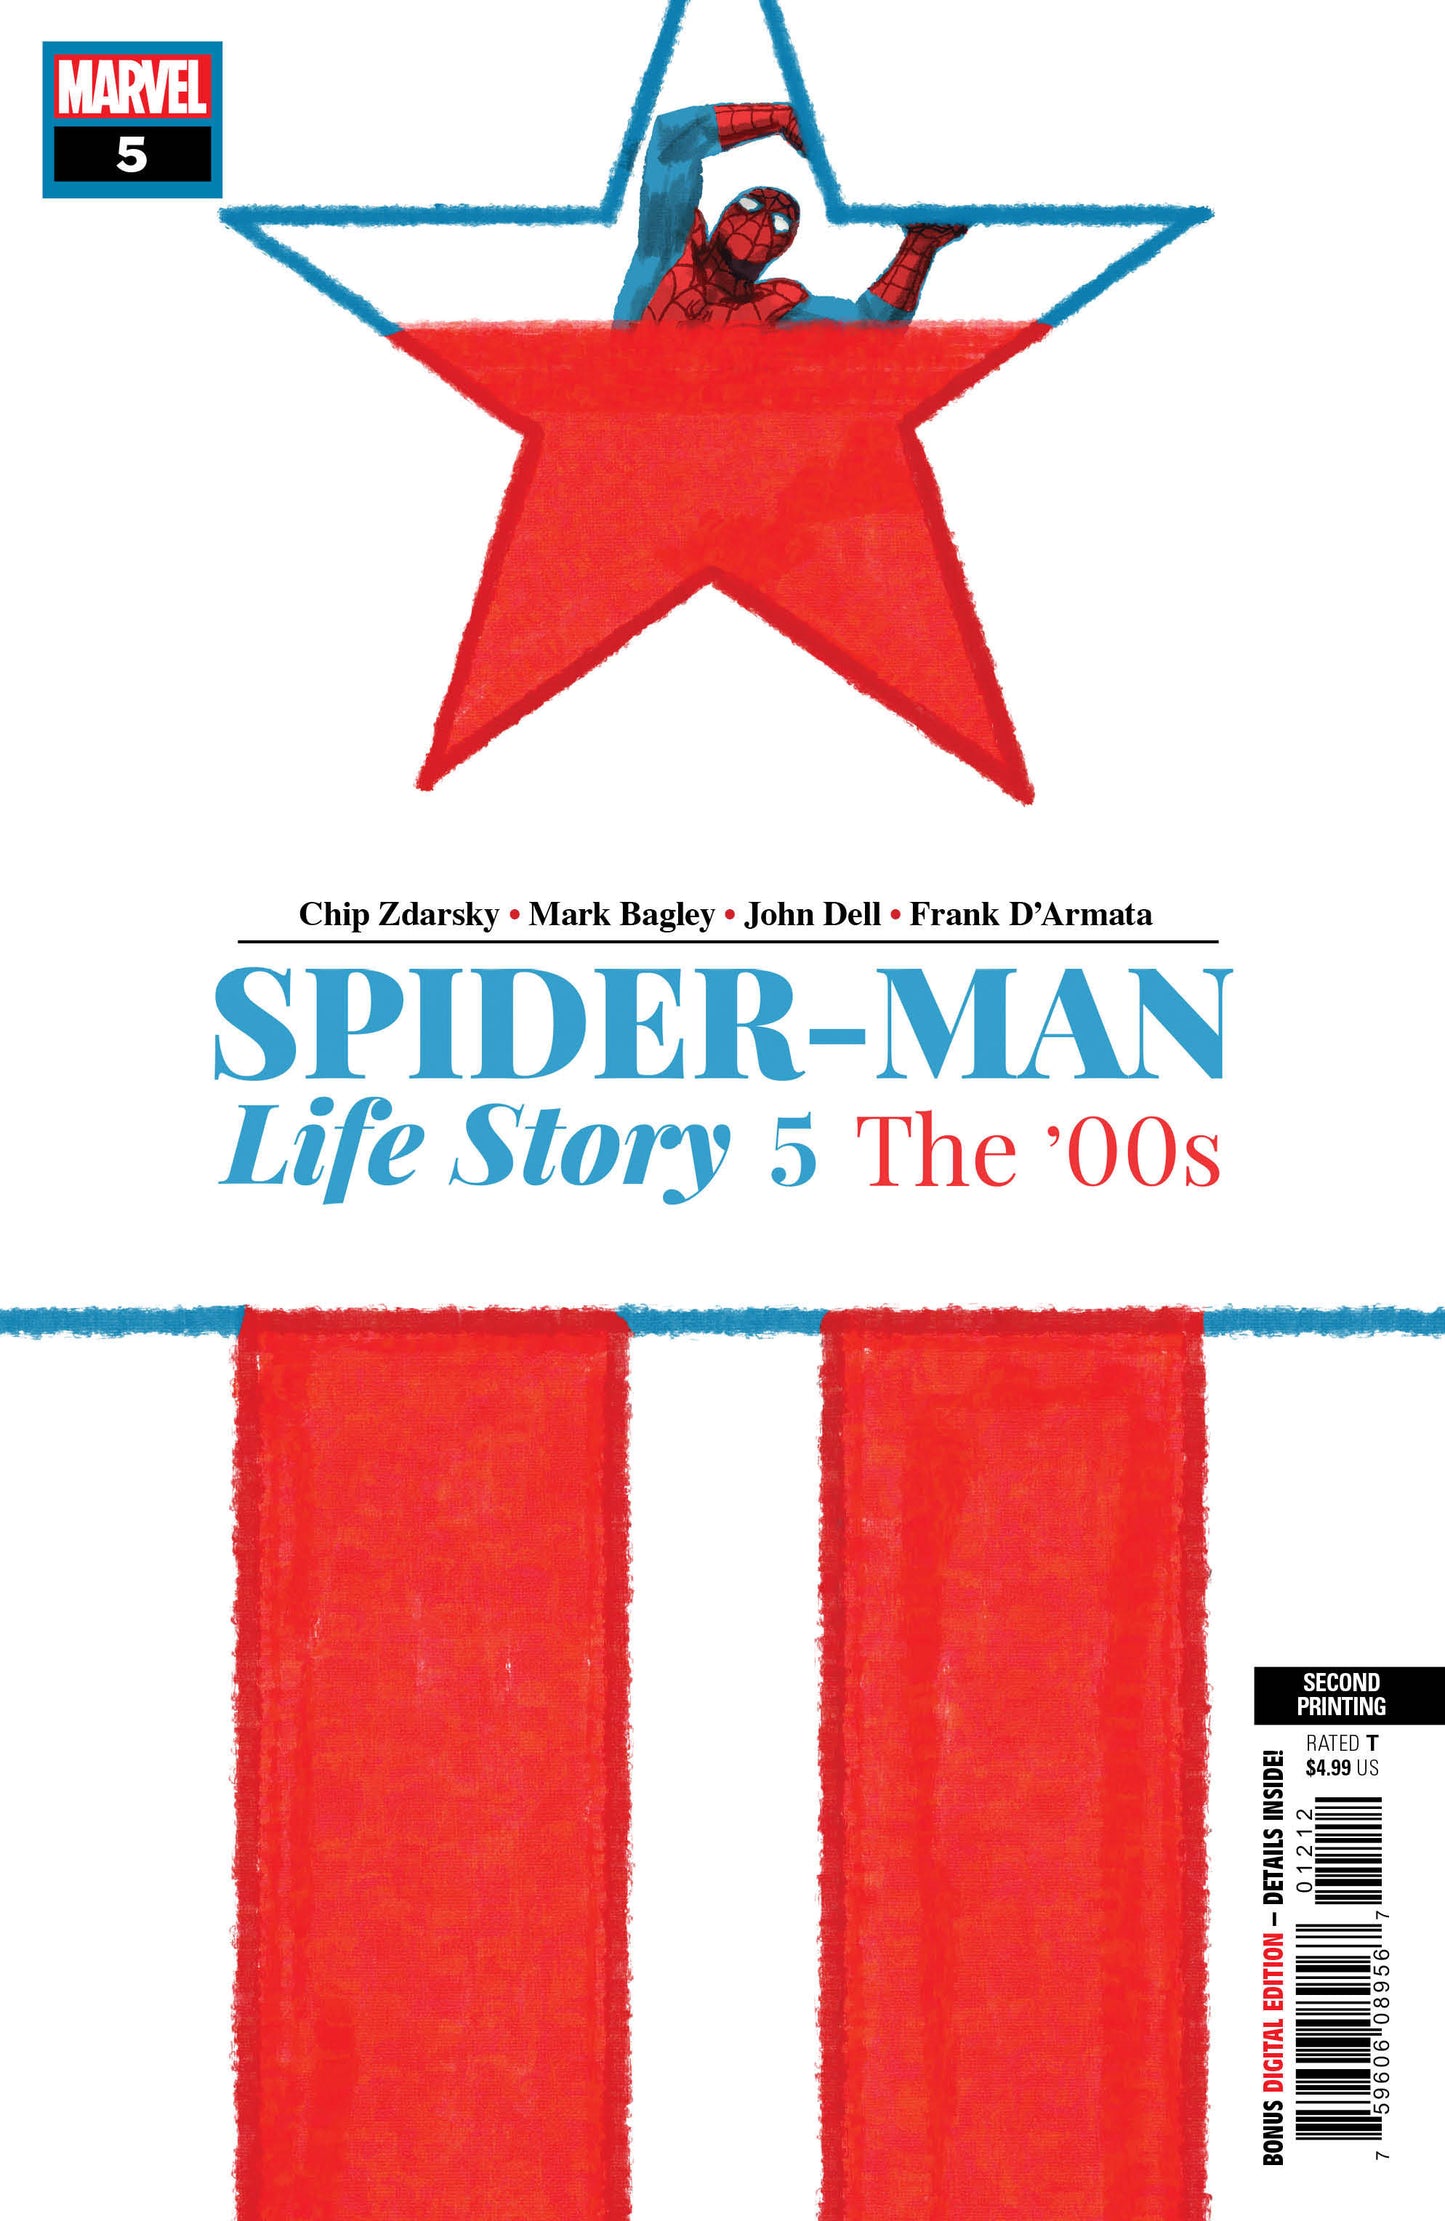 SPIDER-MAN LIFE STORY #5 (OF 6) 2nd Print Chip Zdarsky Variant (08/28/2019) MARVEL